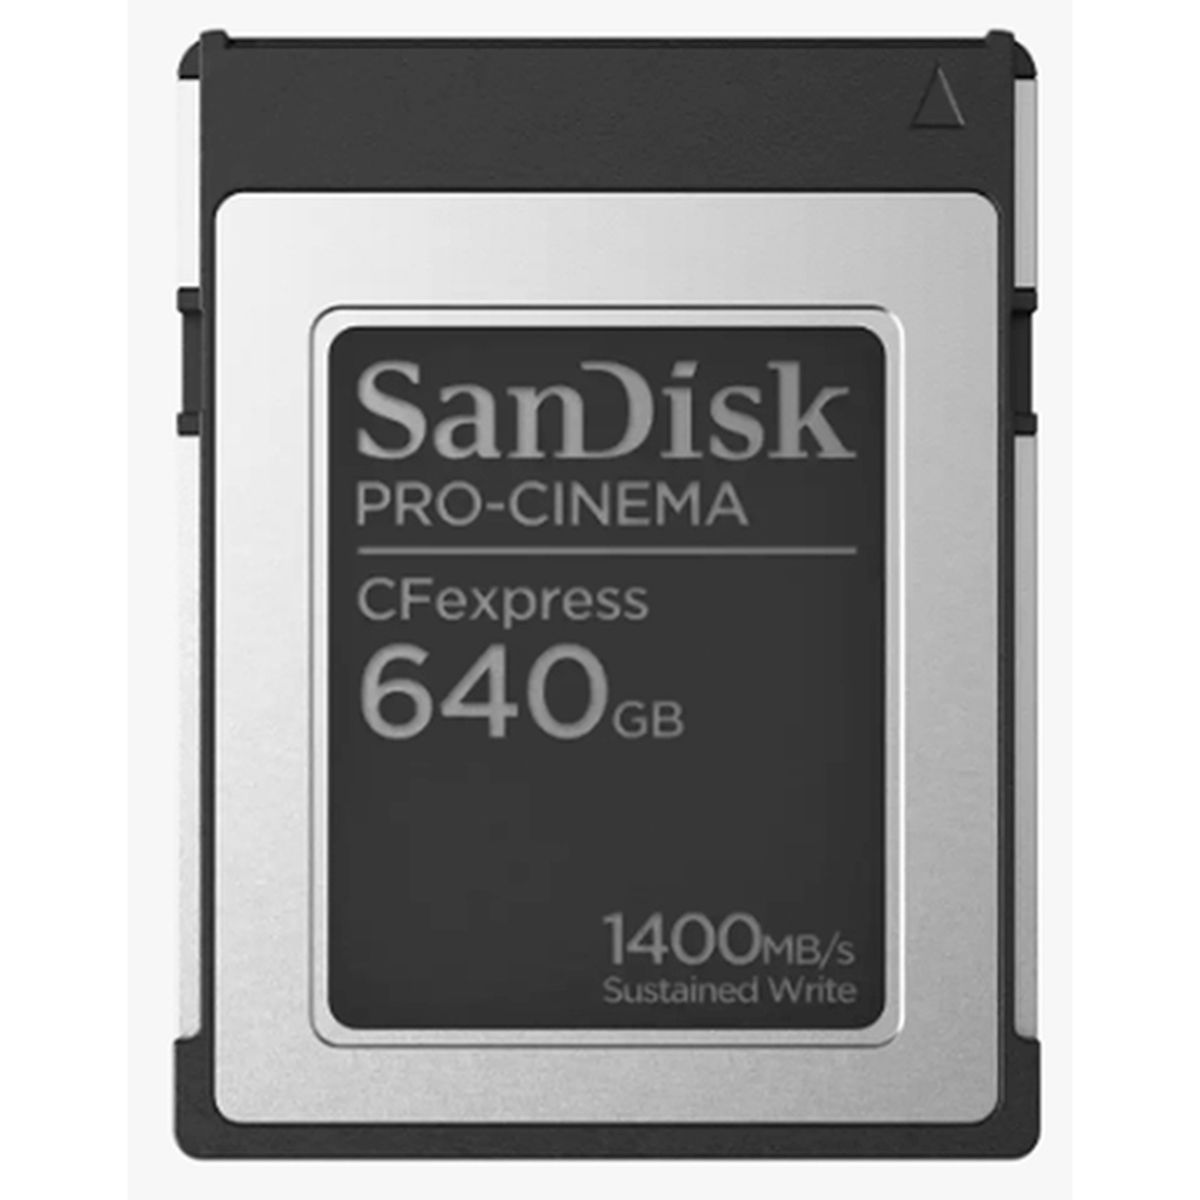 SanDisk Pro-Cinema CFexpress 640GB VPG400 Typ B